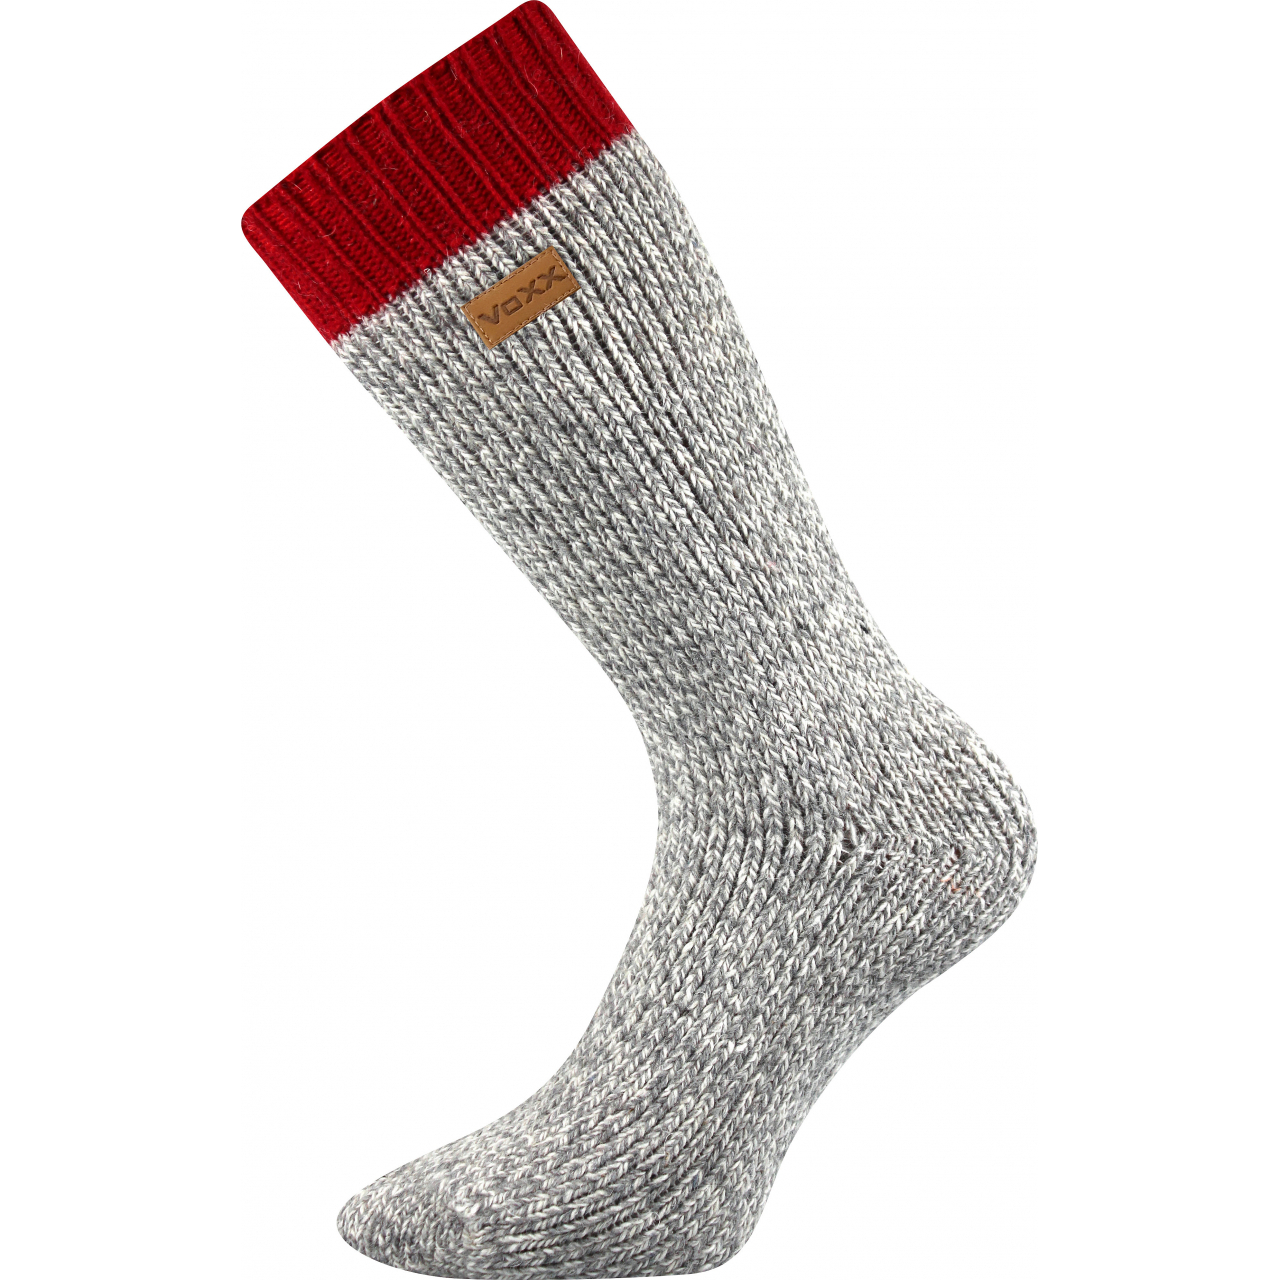 Ponožky unisex termo Voxx Haumea - šedé-červené, 35-38